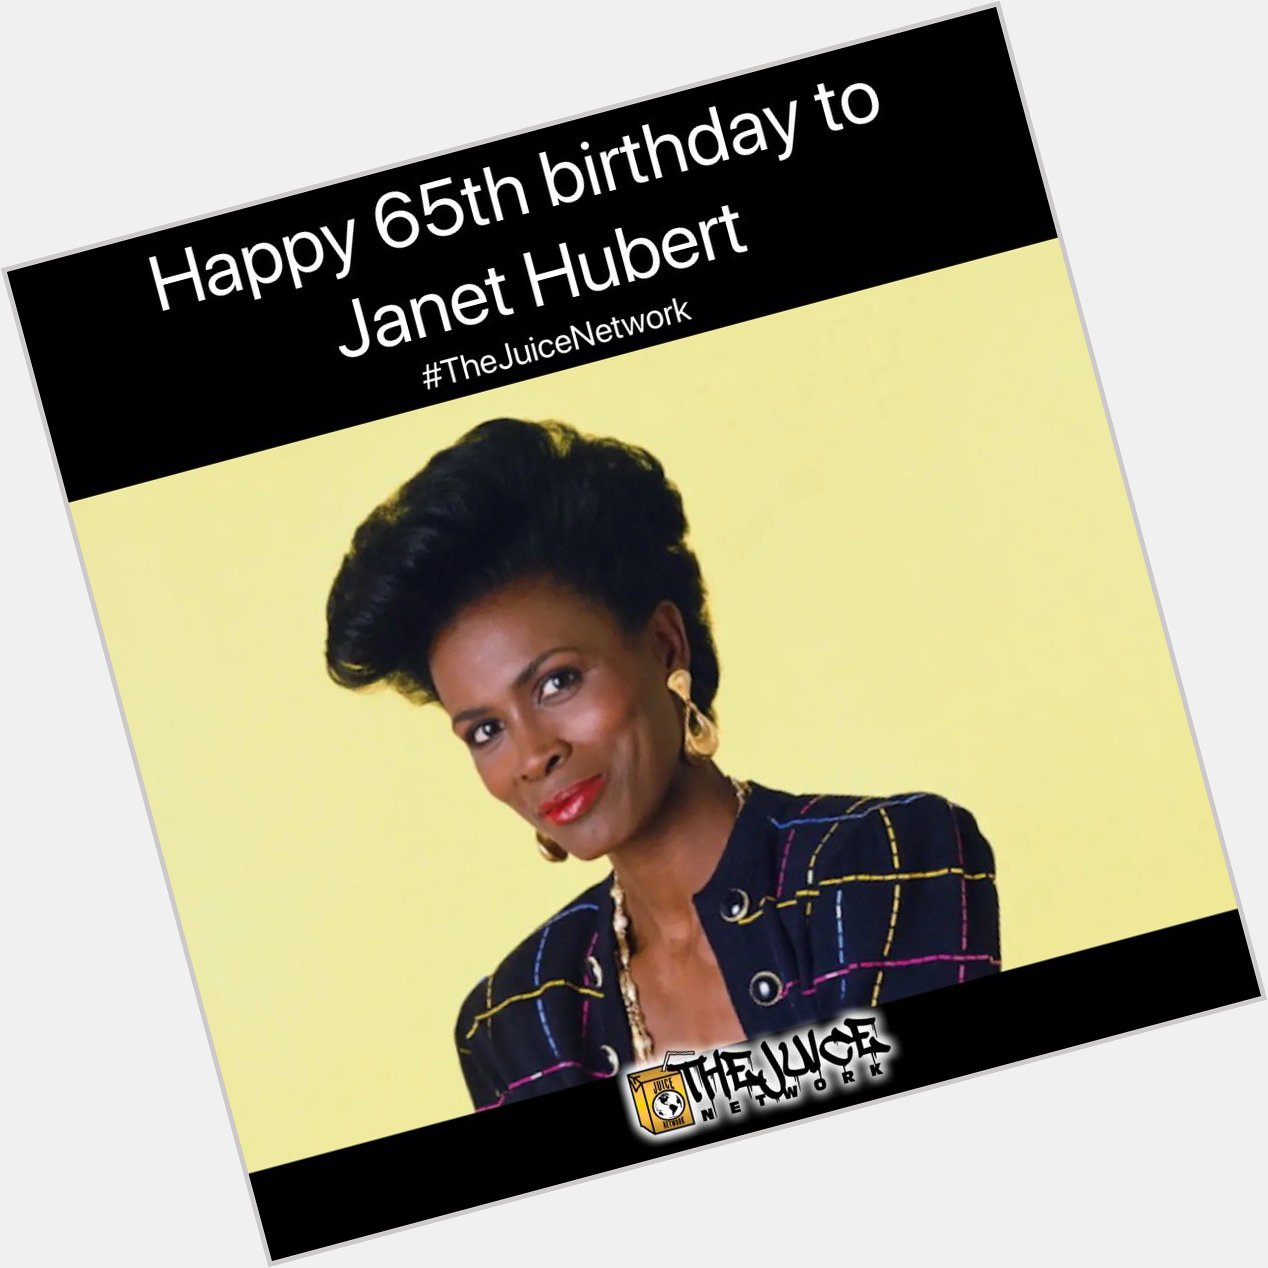 Happy 65th birthday to Janet Hubert!    